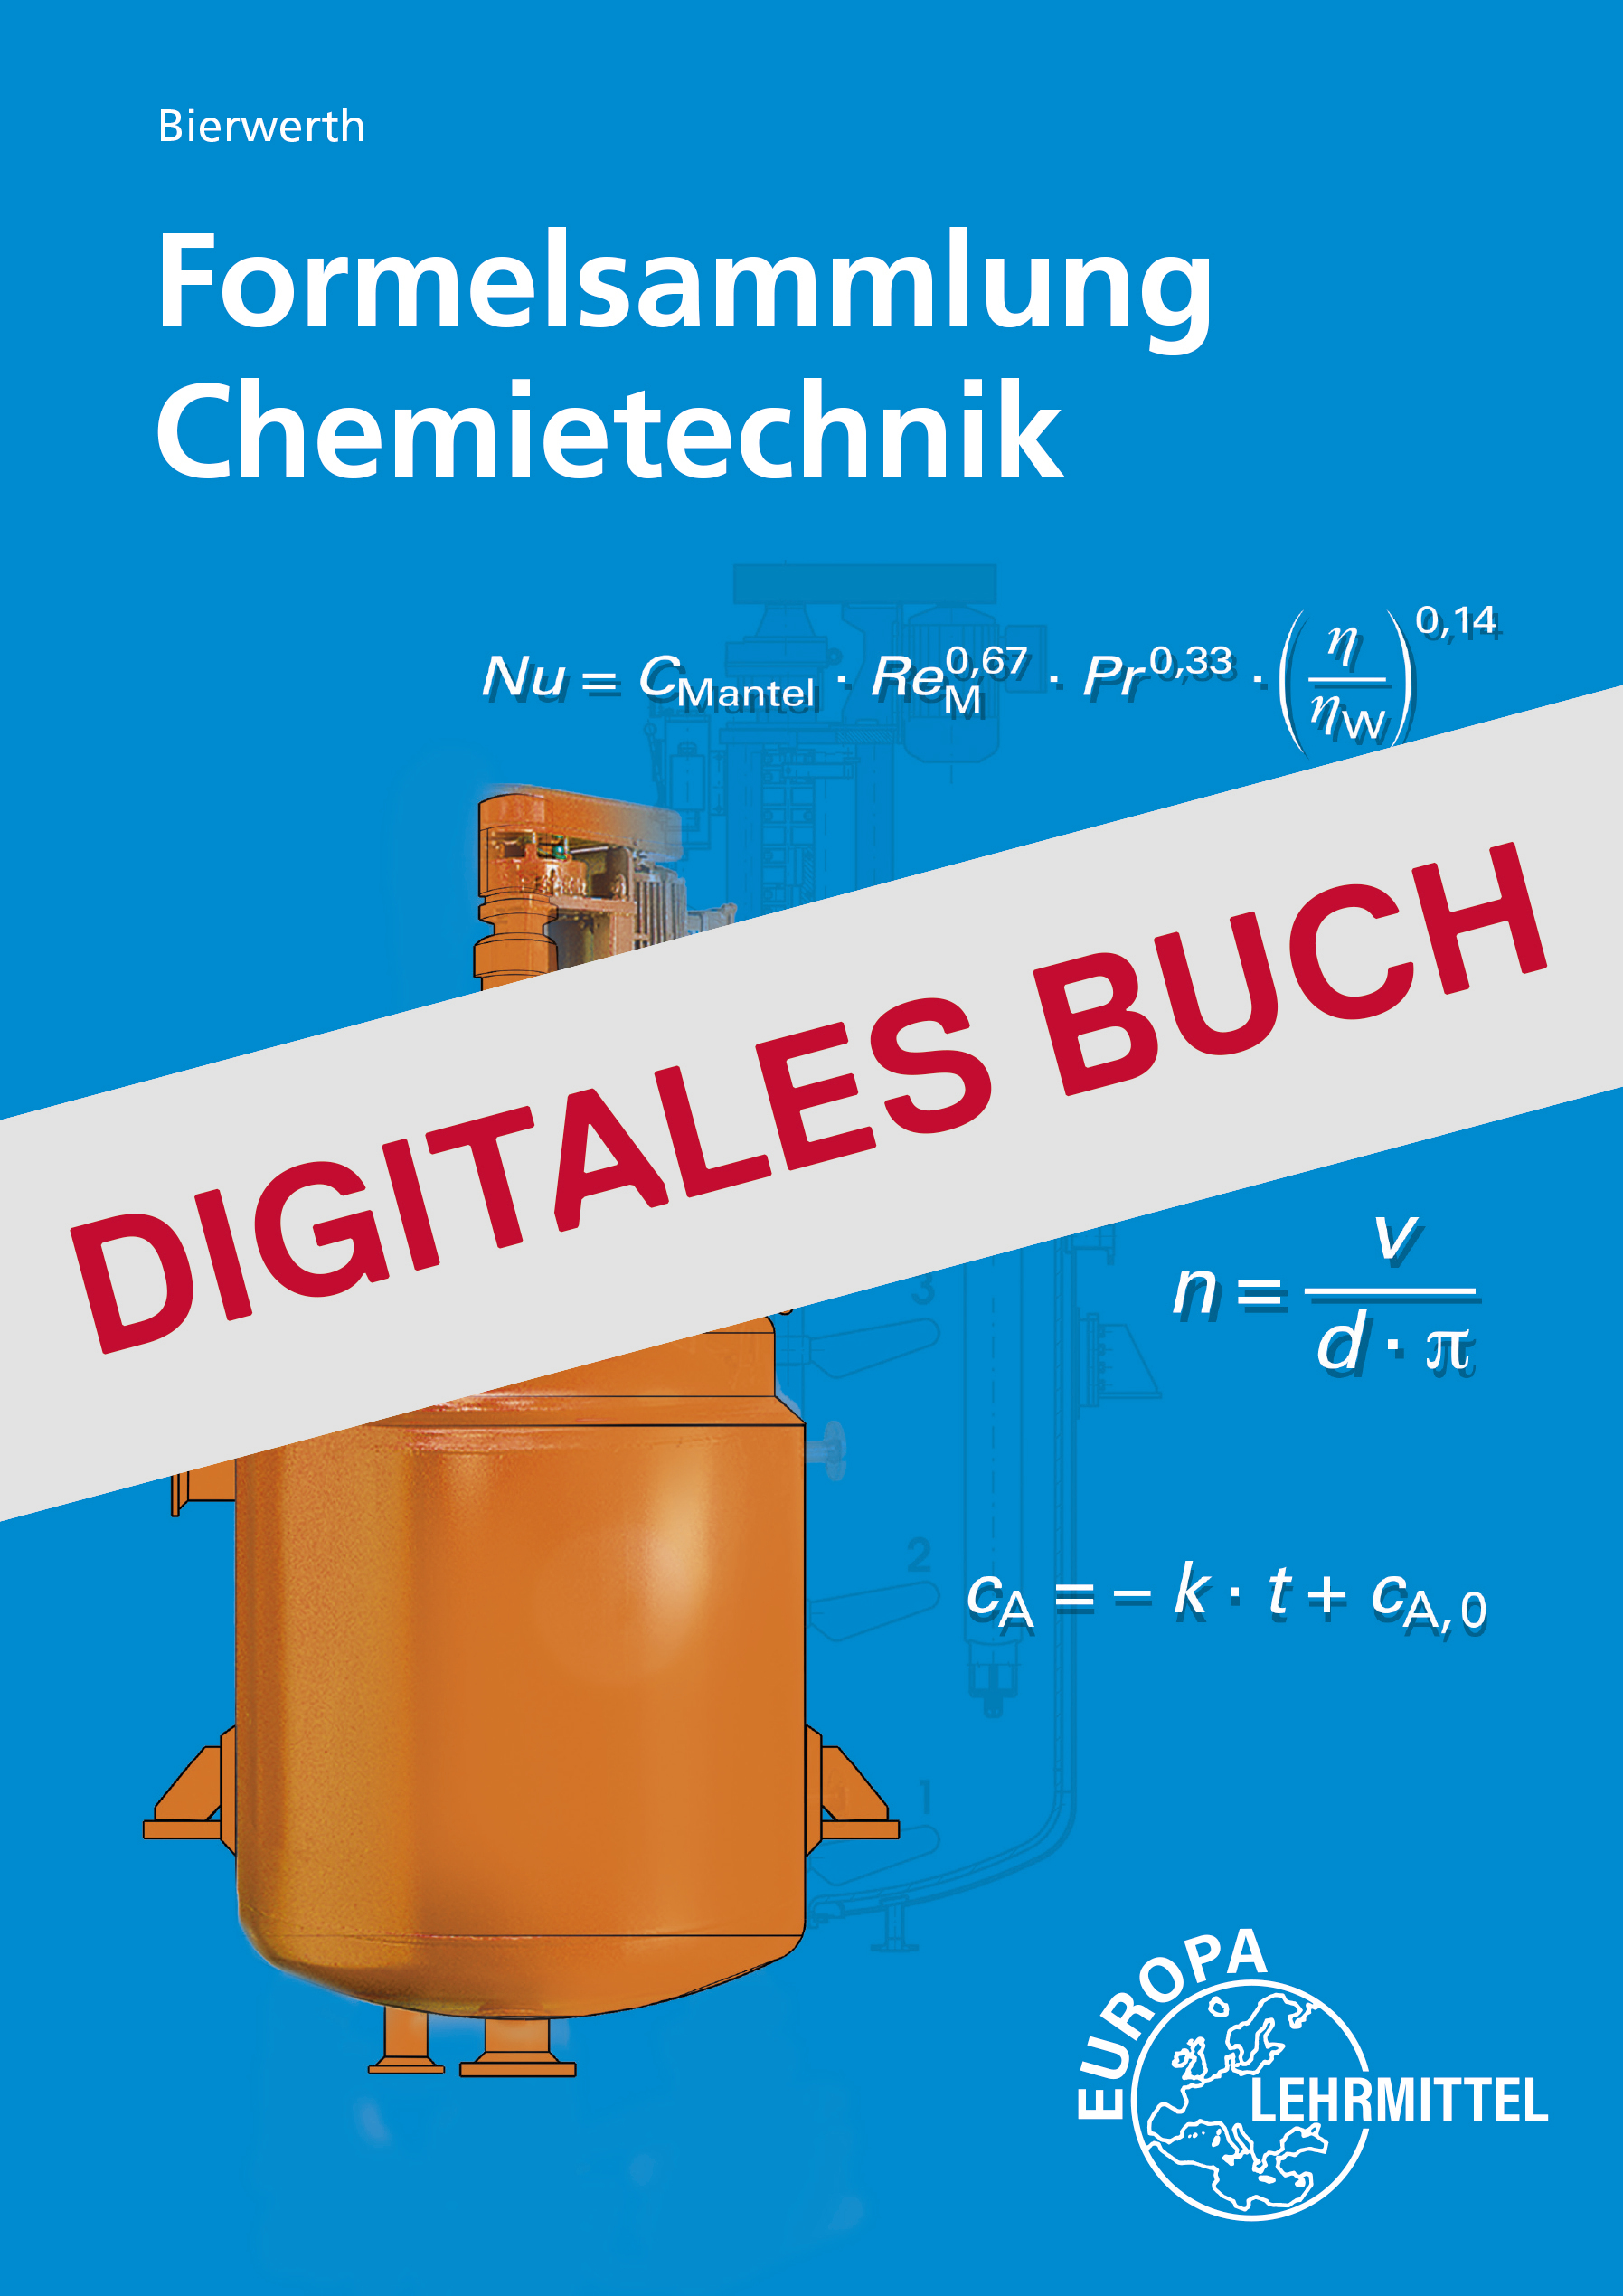 Formelsammlung Chemietechnik - Digitales Buch